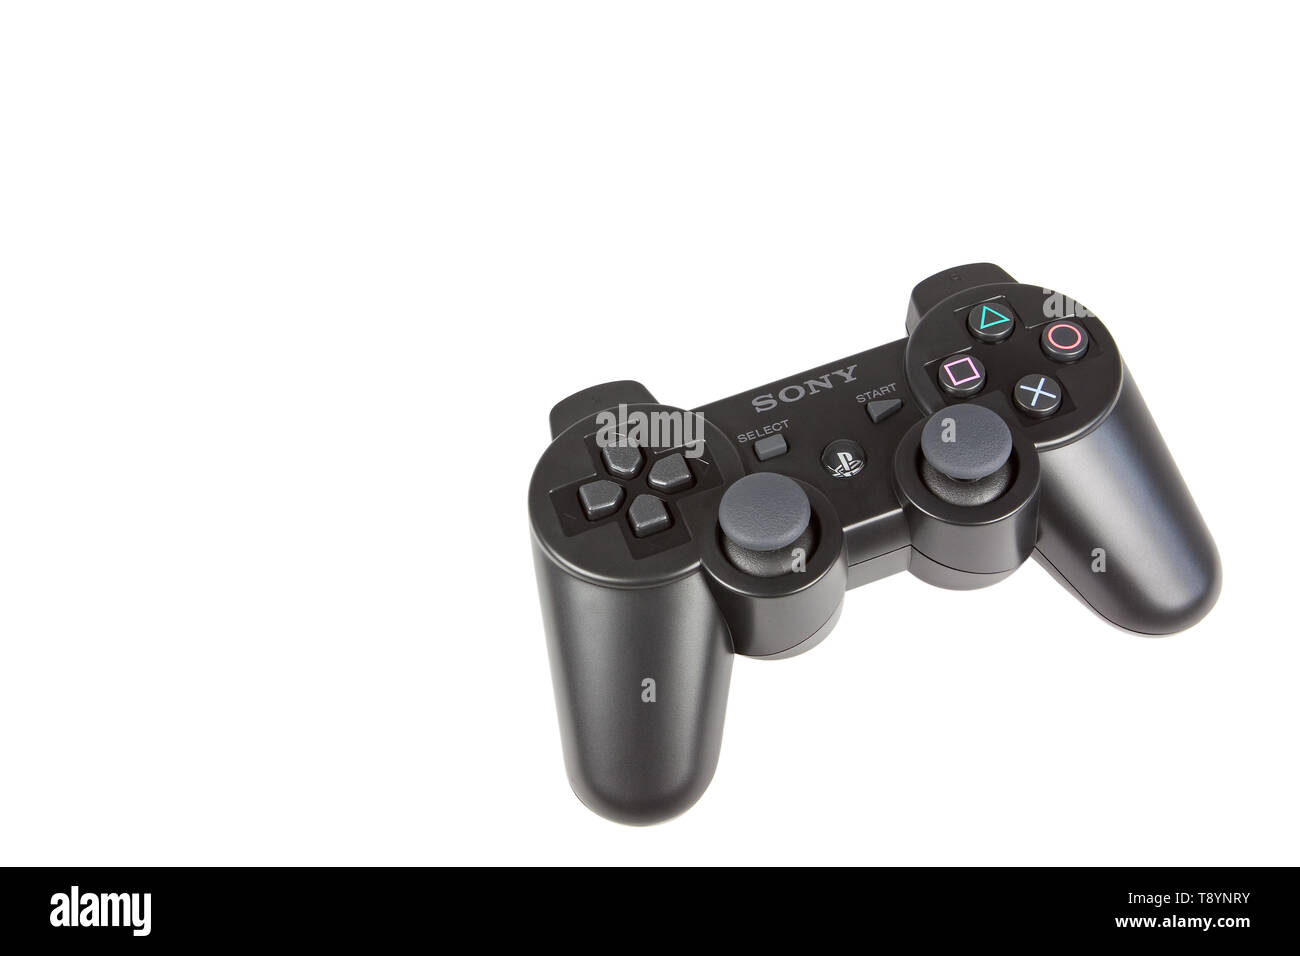 Una Sony Playstation 3 consola de juegos PS3 Controller. Foto de stock